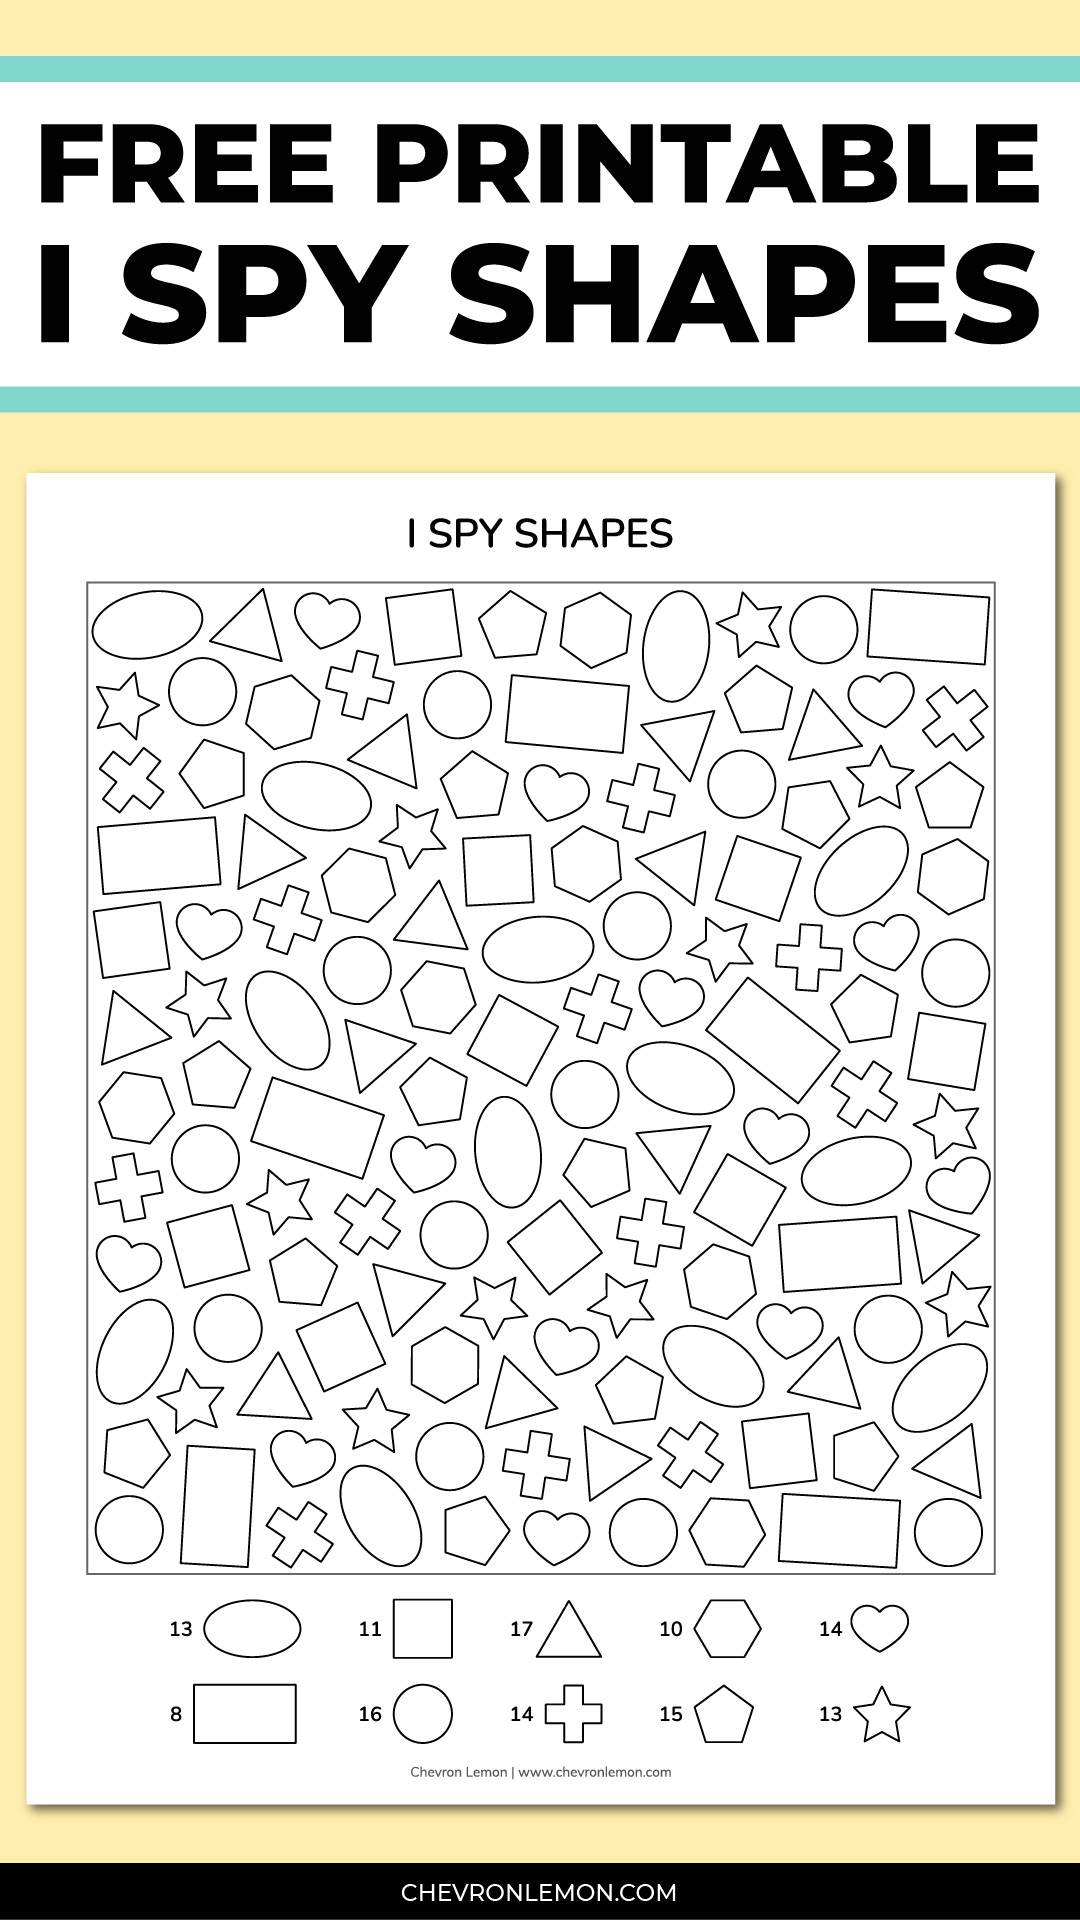 Printable I spy shapes activity